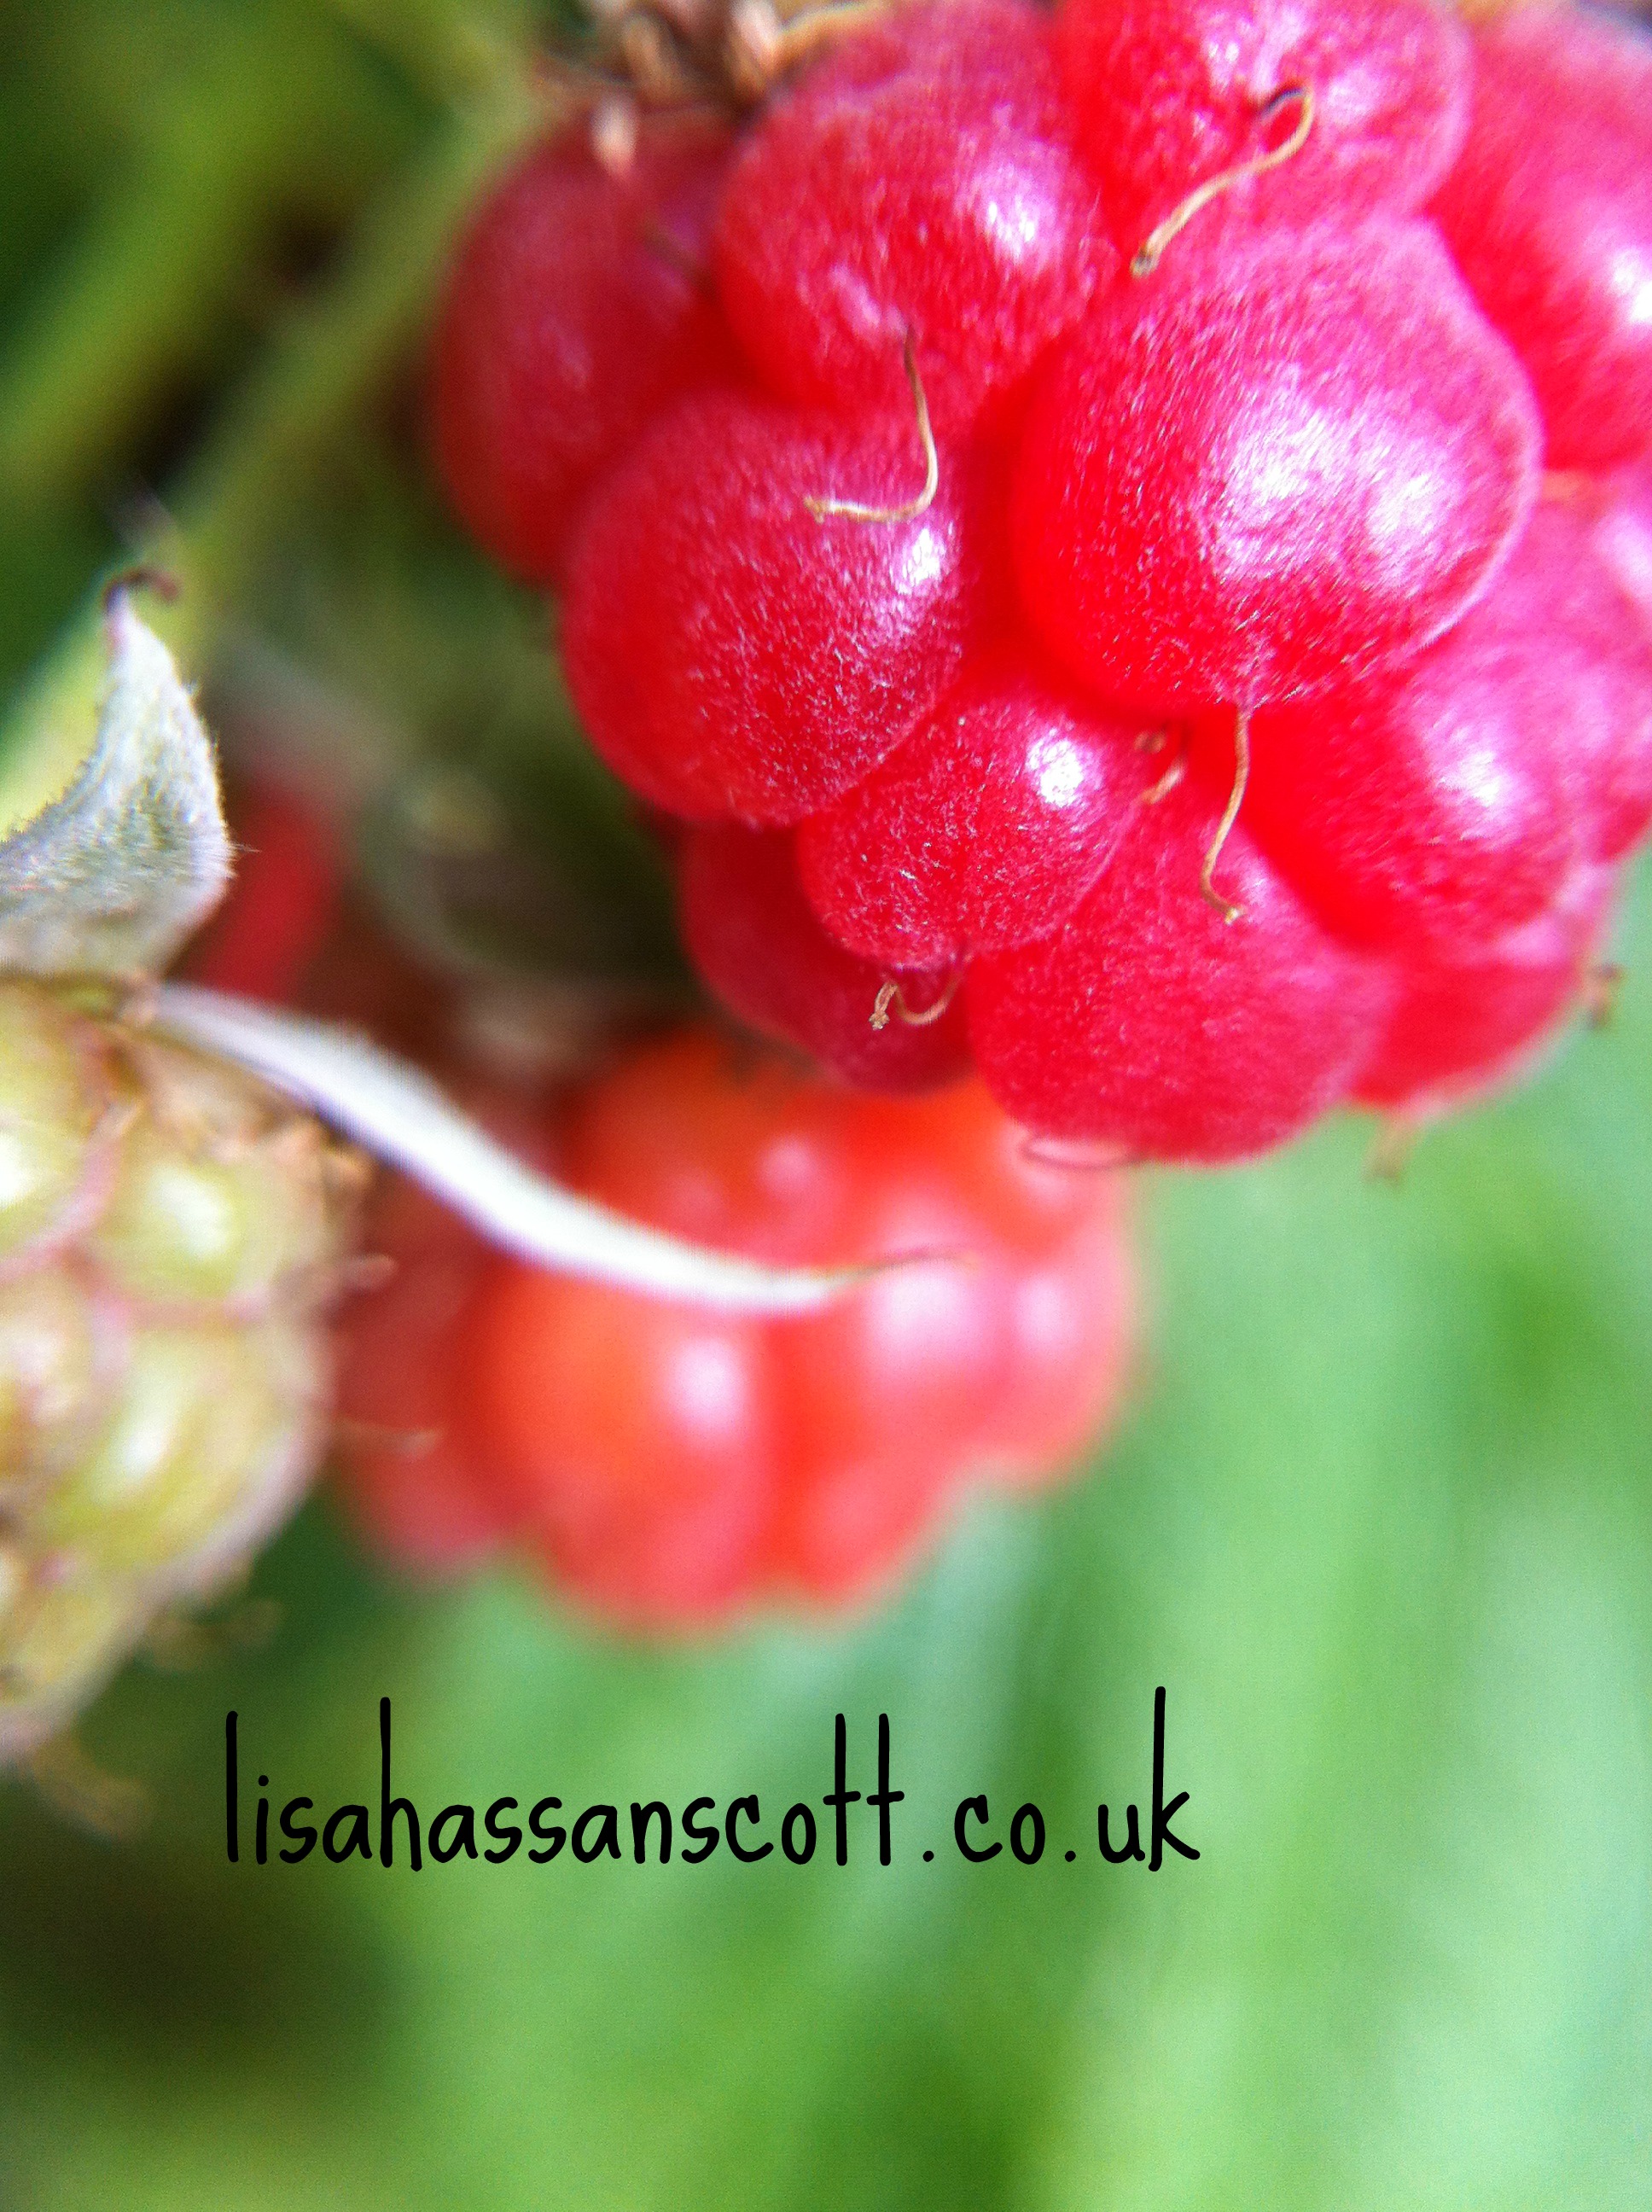 up close raspberry